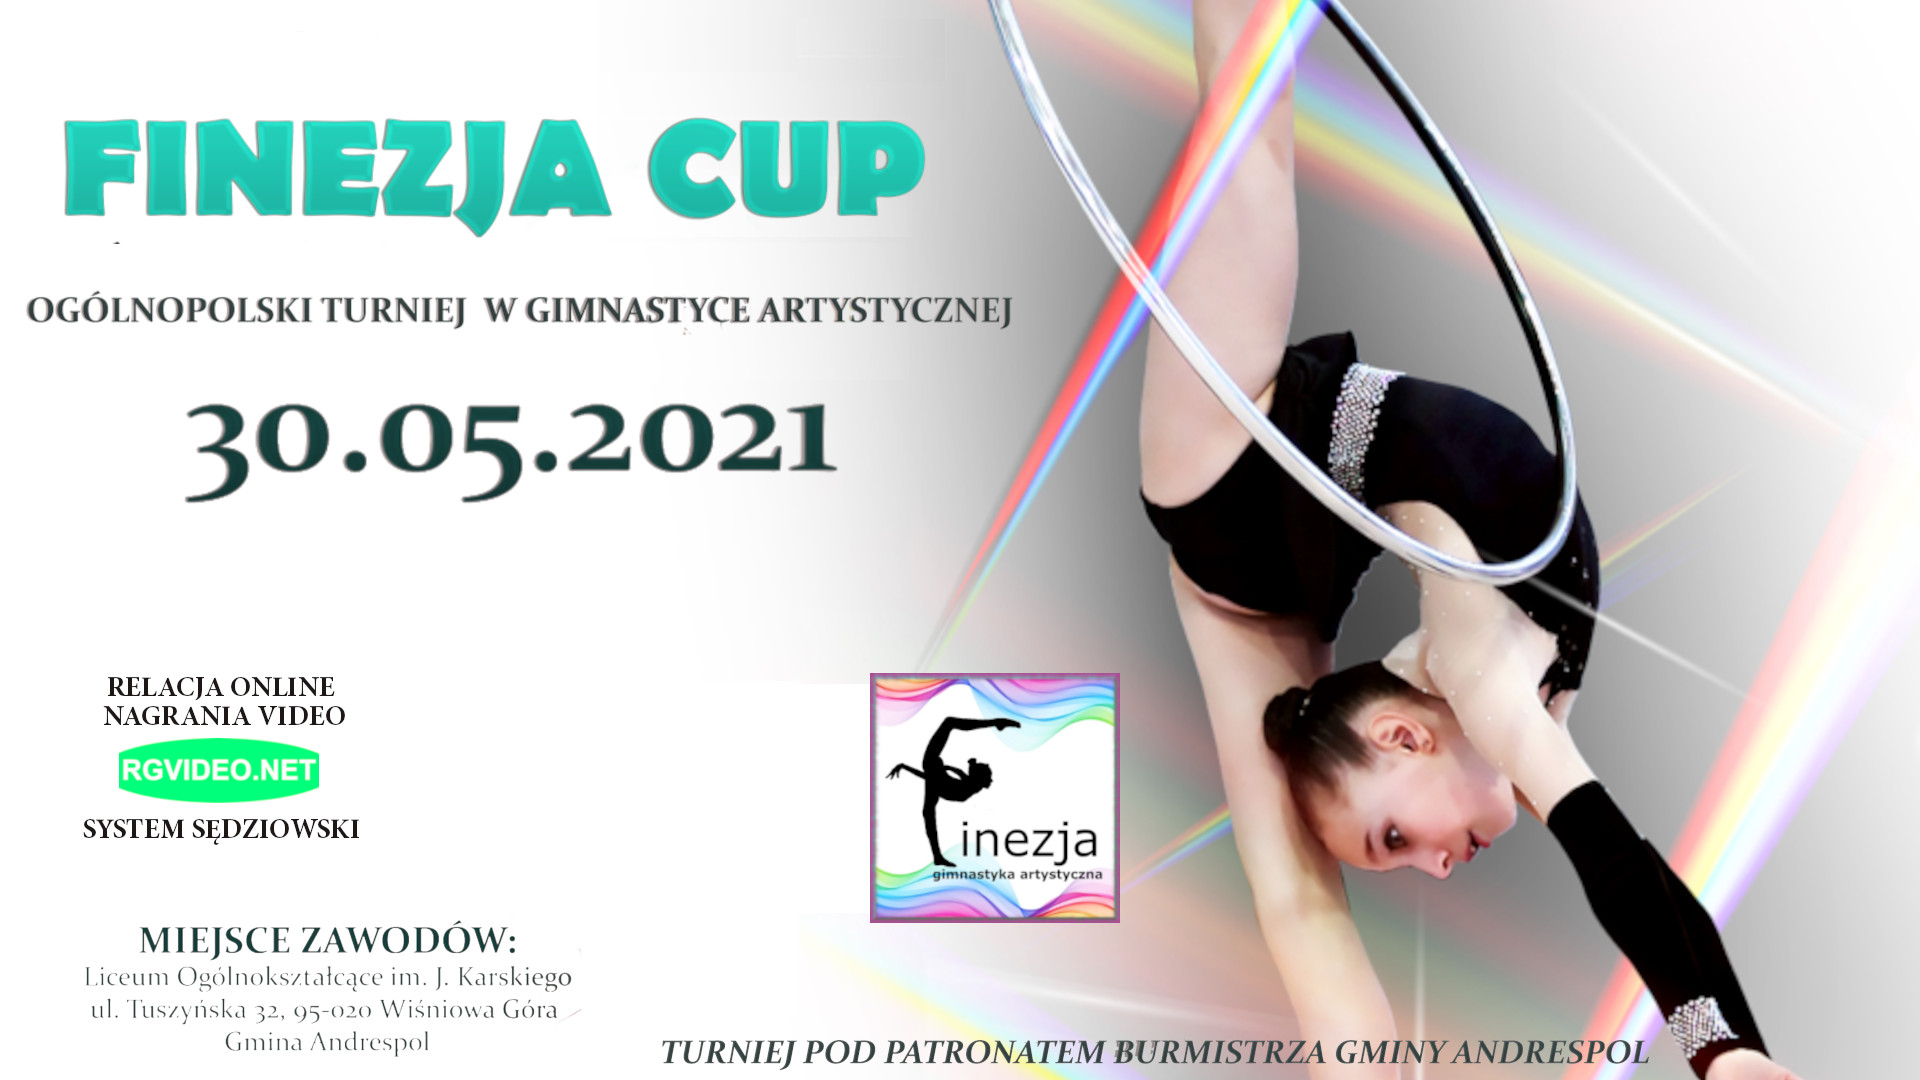 FINEZJA CUP 2021